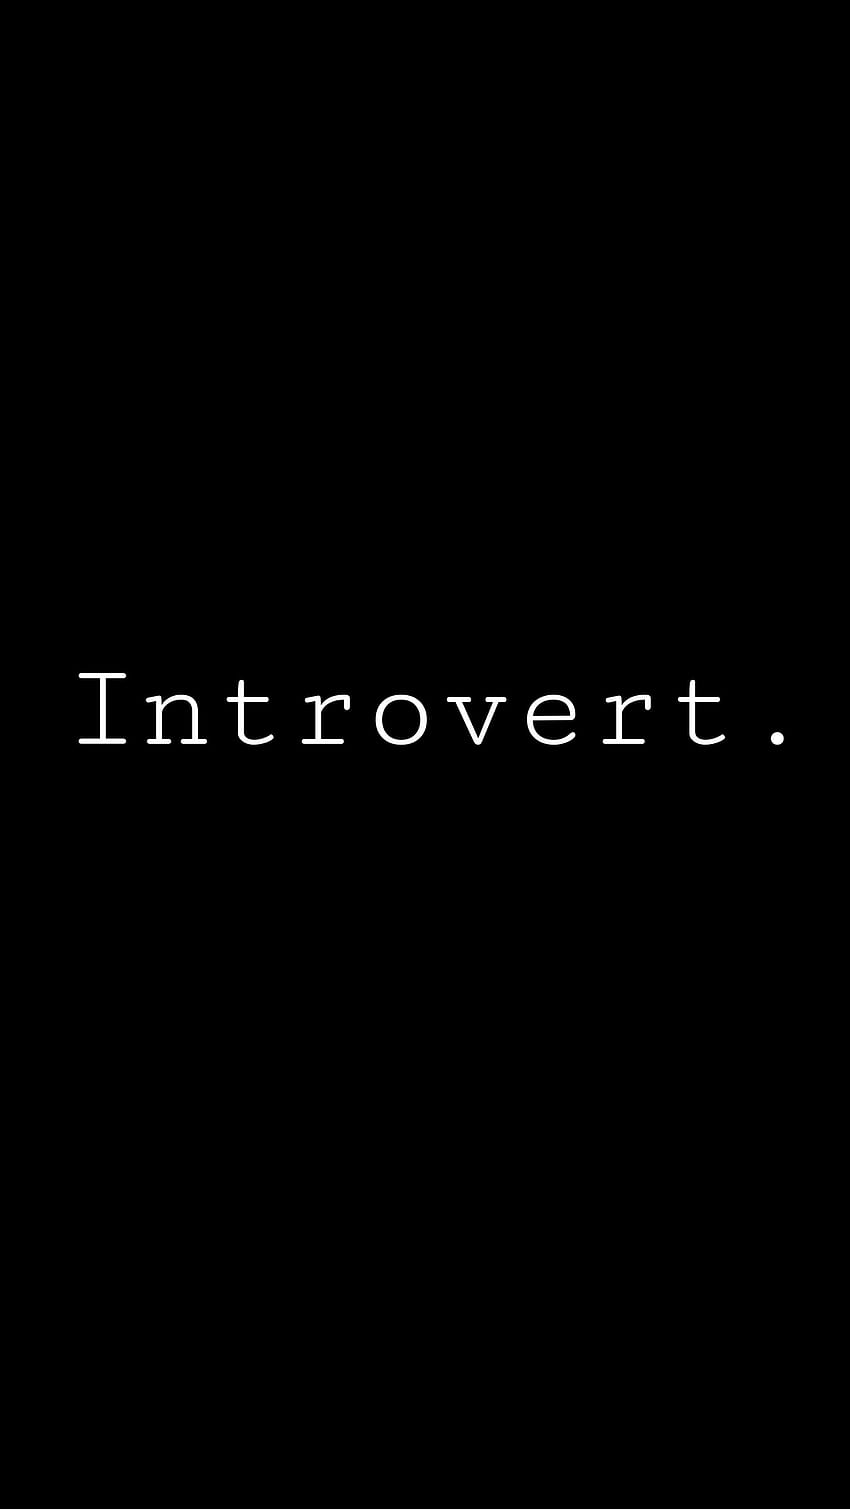 An introvert I made because im an introvert, introvert phone HD phone wallpaper